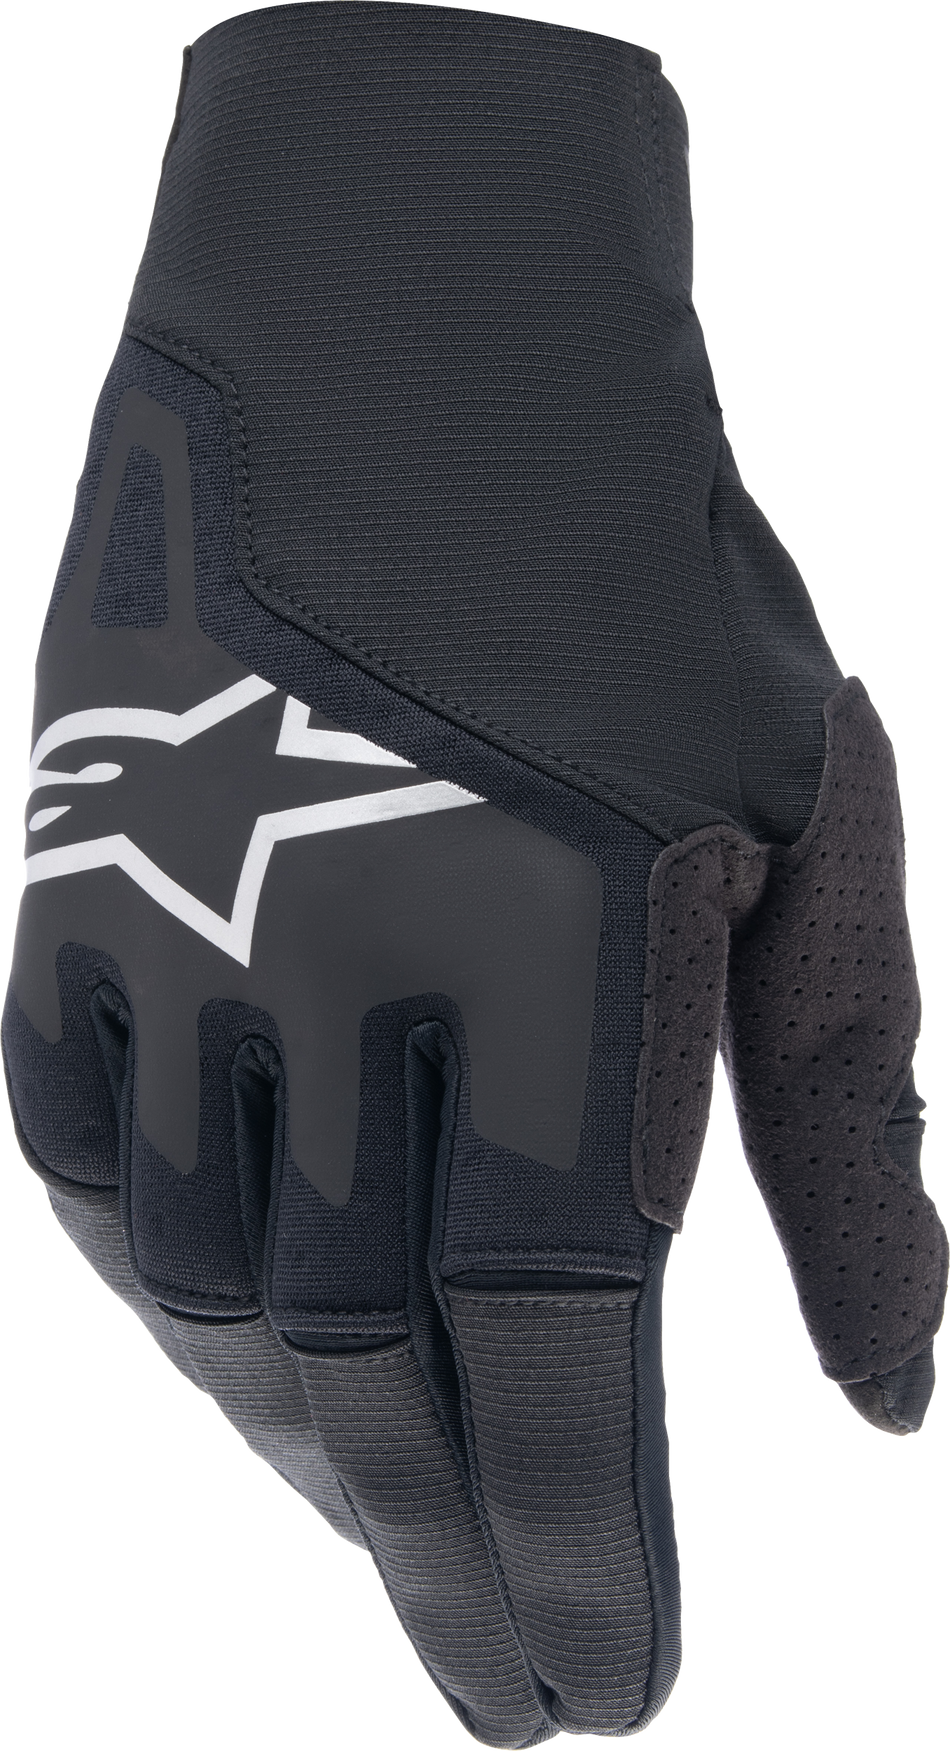 ALPINESTARS Techstar Gloves Black Md 3561024-10-M